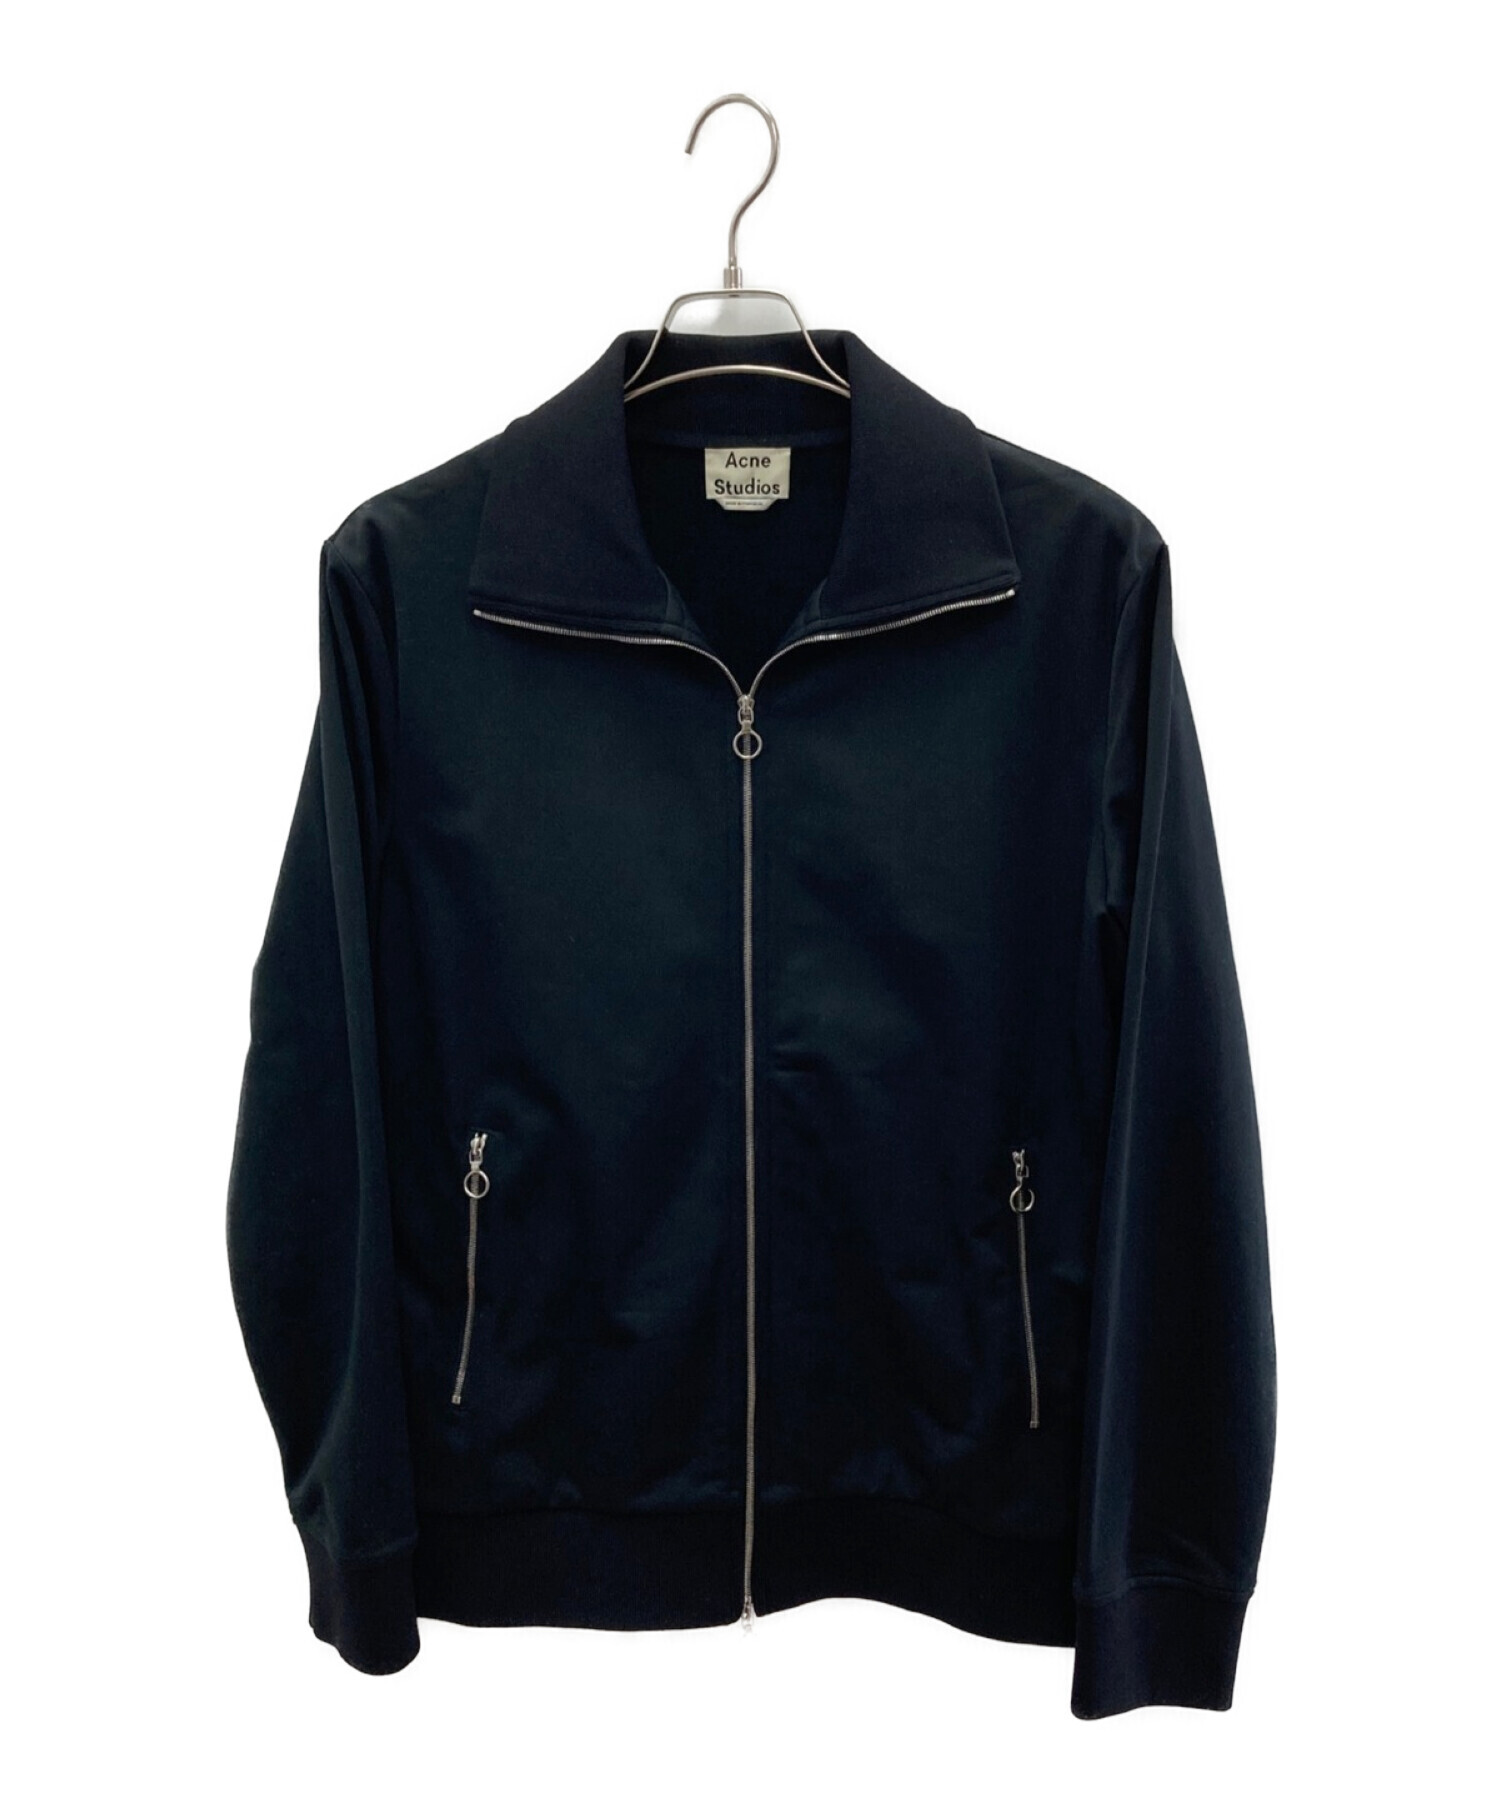 ACNE STUDIOS (アクネストゥディオズ) リングジップトラックジャケット ブラック サイズ:S